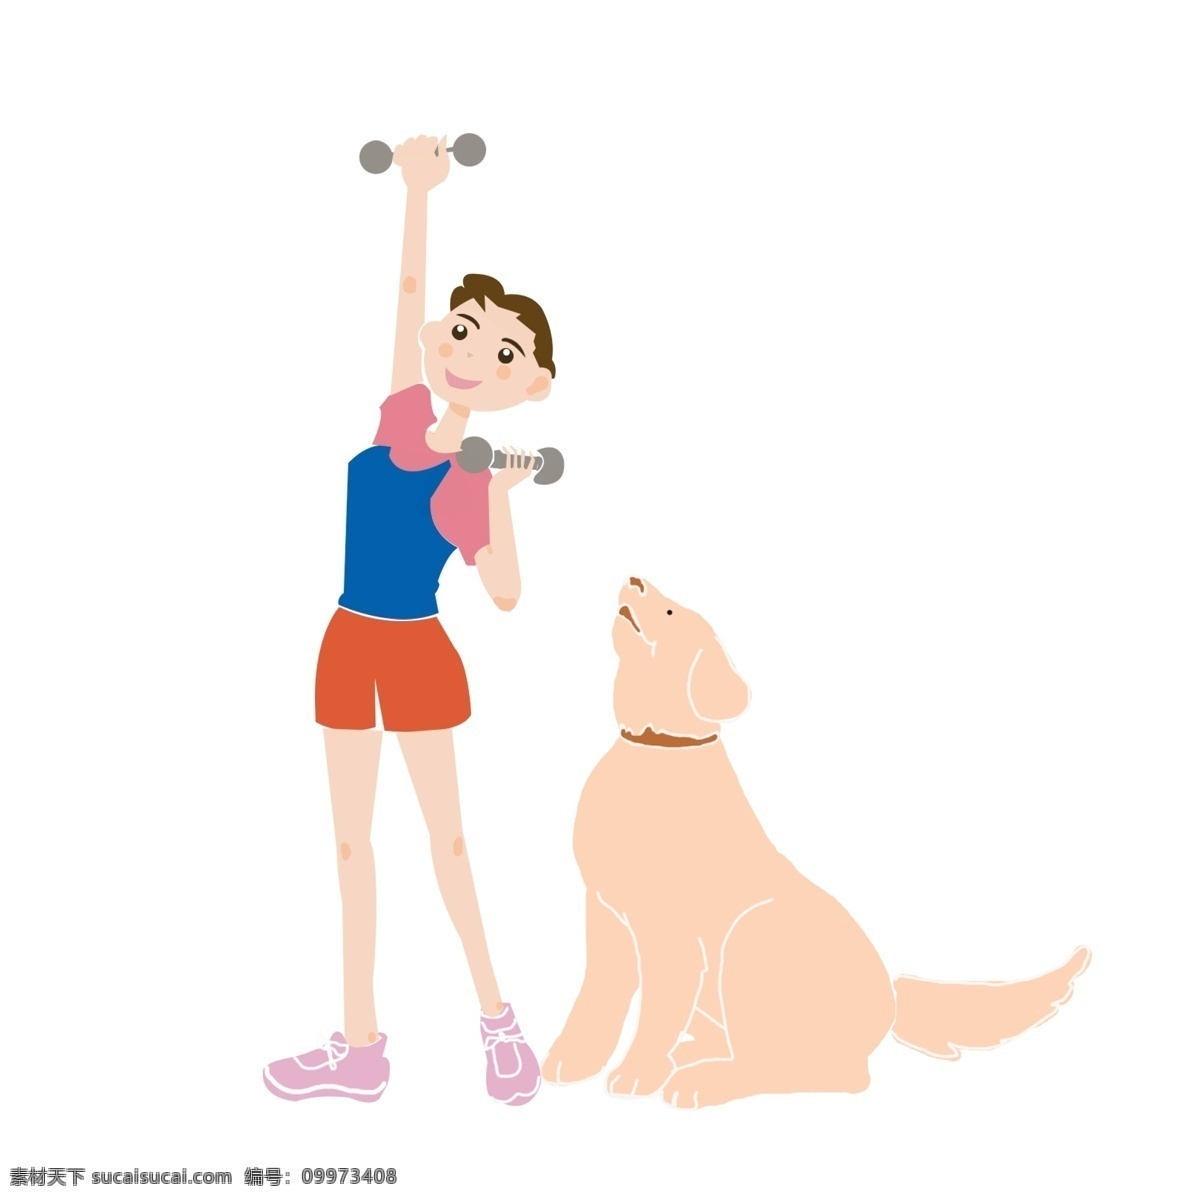 创意 插画 健身 女孩 元素 卡通运动 狗狗 健身房 运动器材 可爱健身 矢量健身 唯美健身 插画健身 健身男孩 运动 免扣运动人物